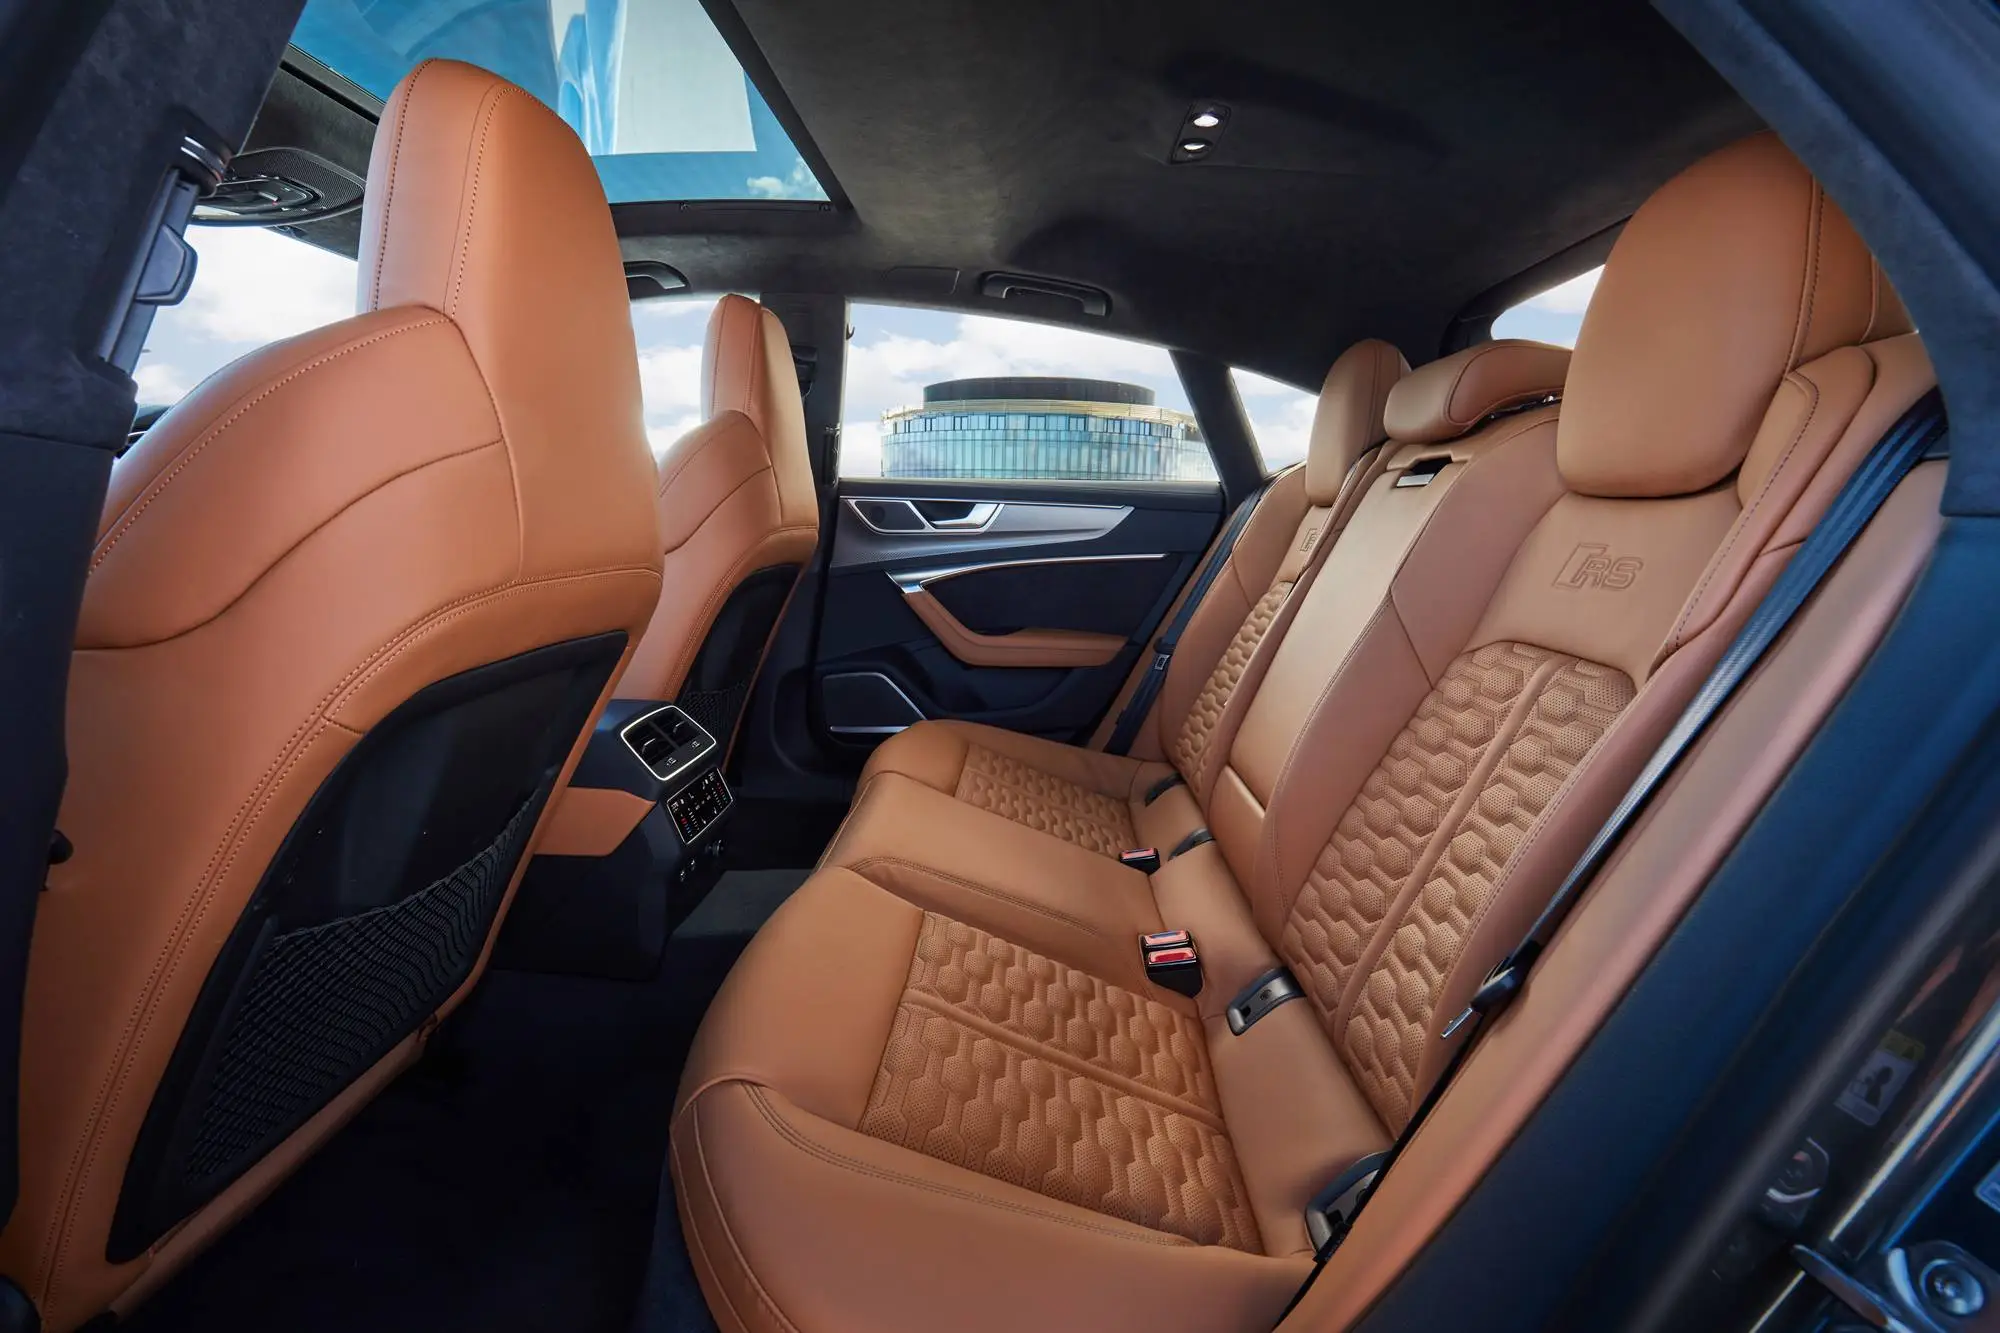 Audi A7 interior - Seats